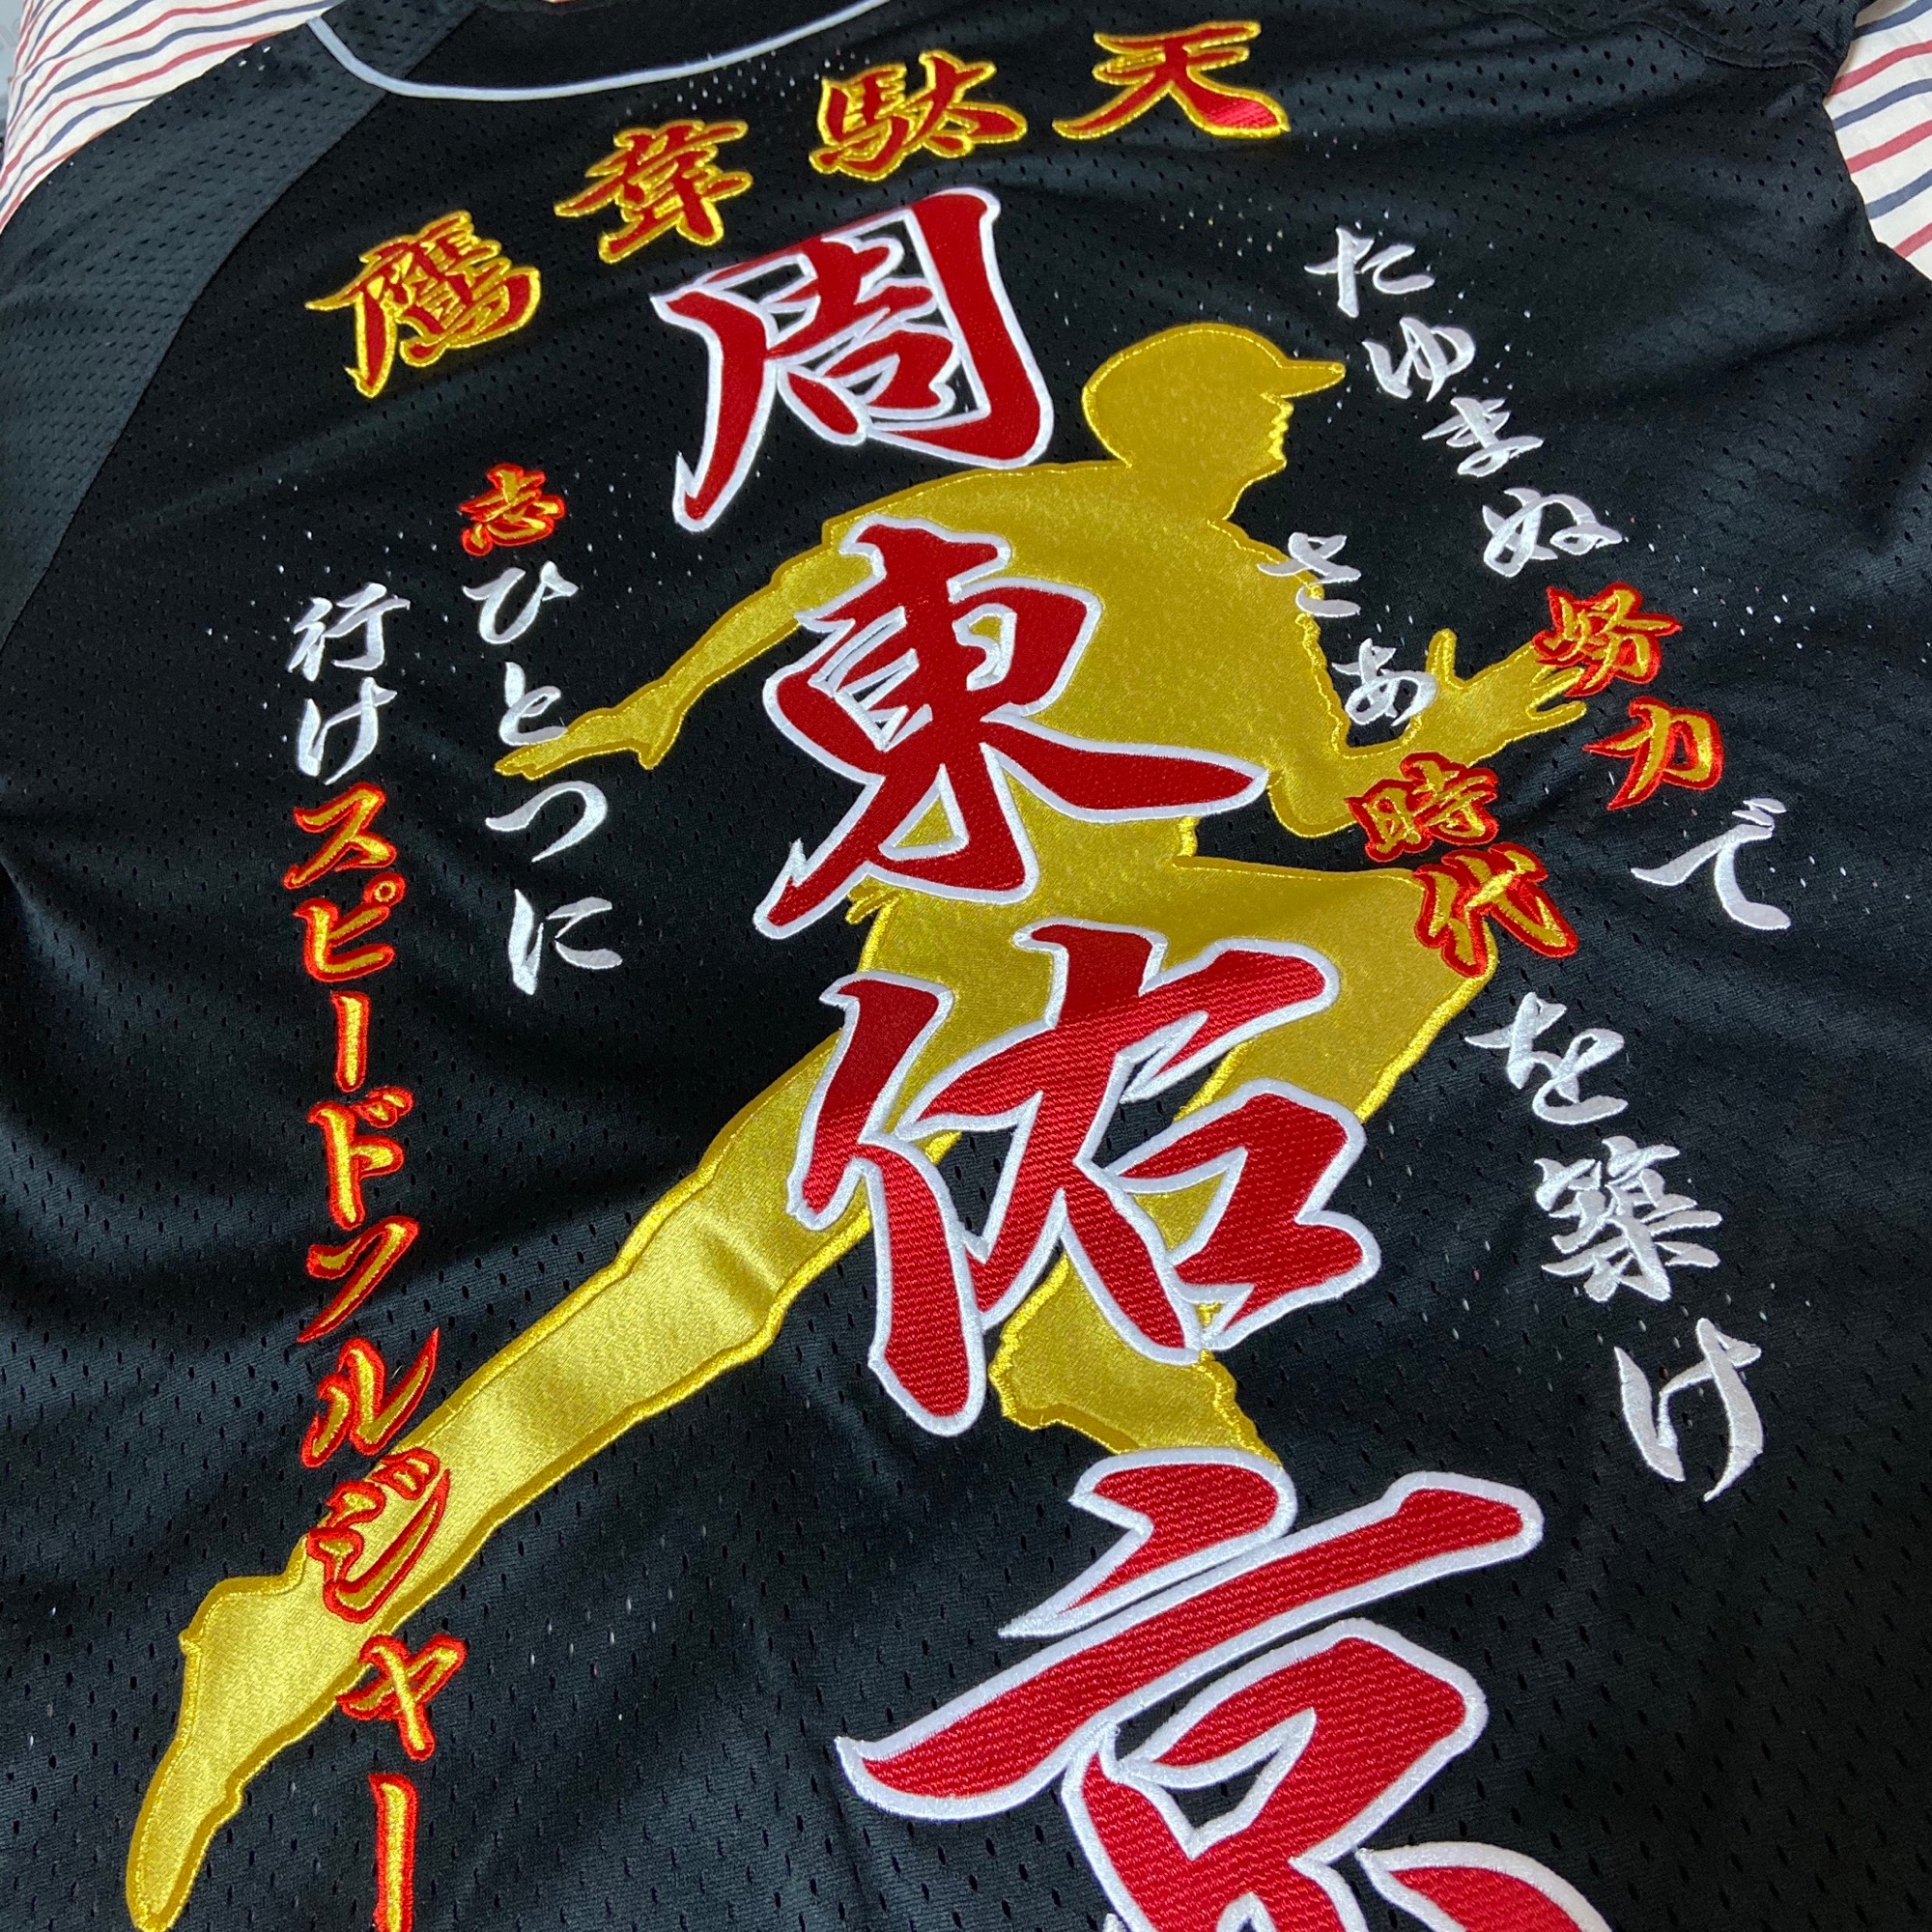 福岡ソフトバンクホークス周東佑京選手の応援刺繍ユニフォーム